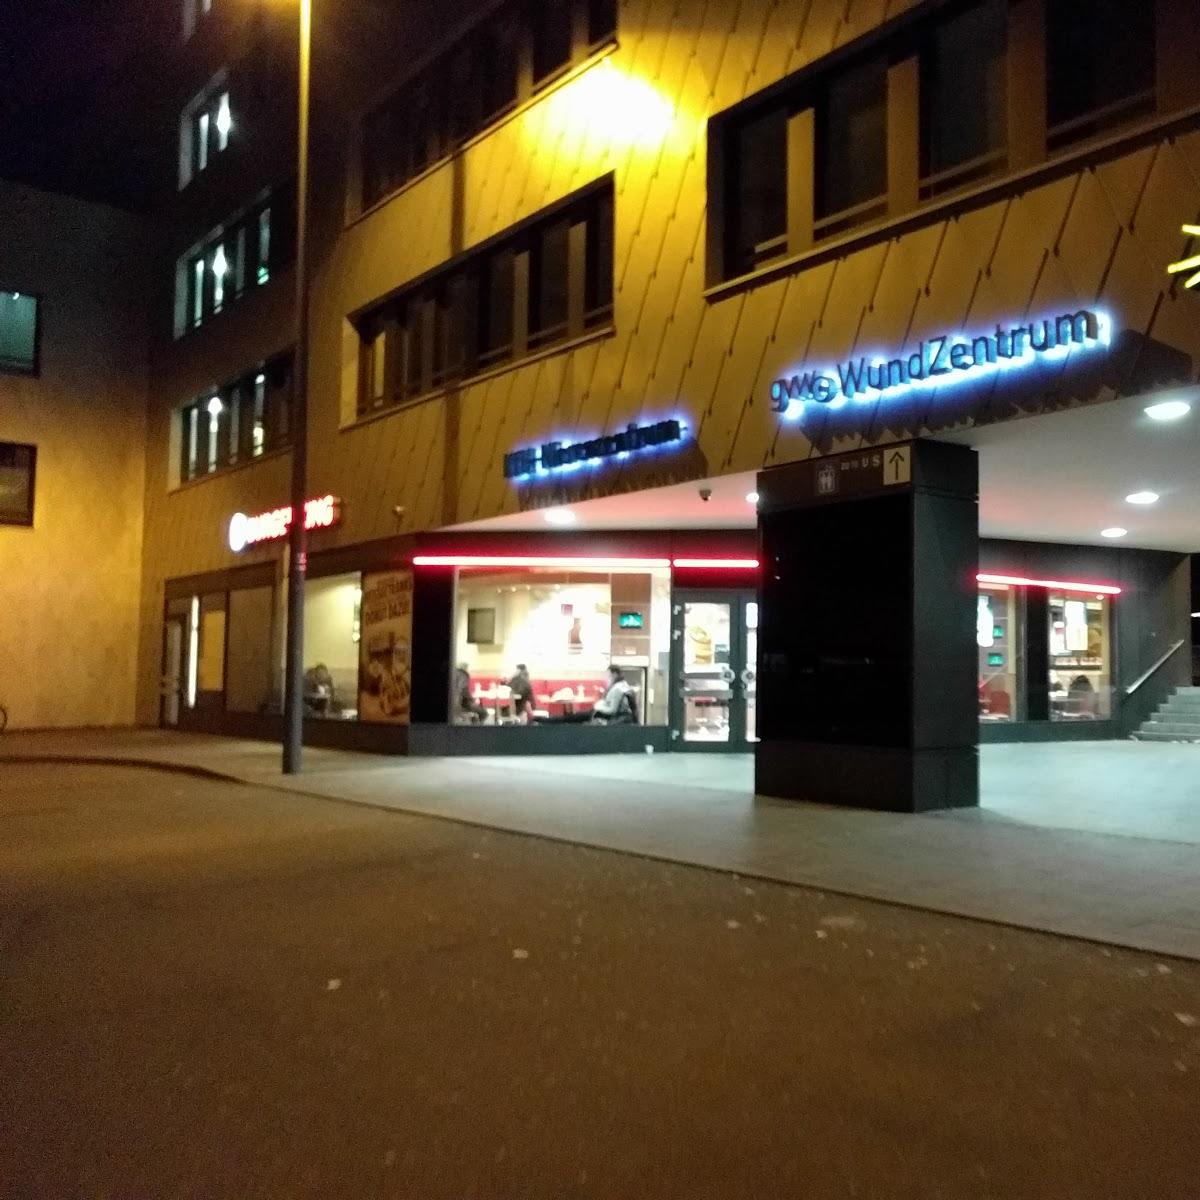 Restaurant "Burger King" in München